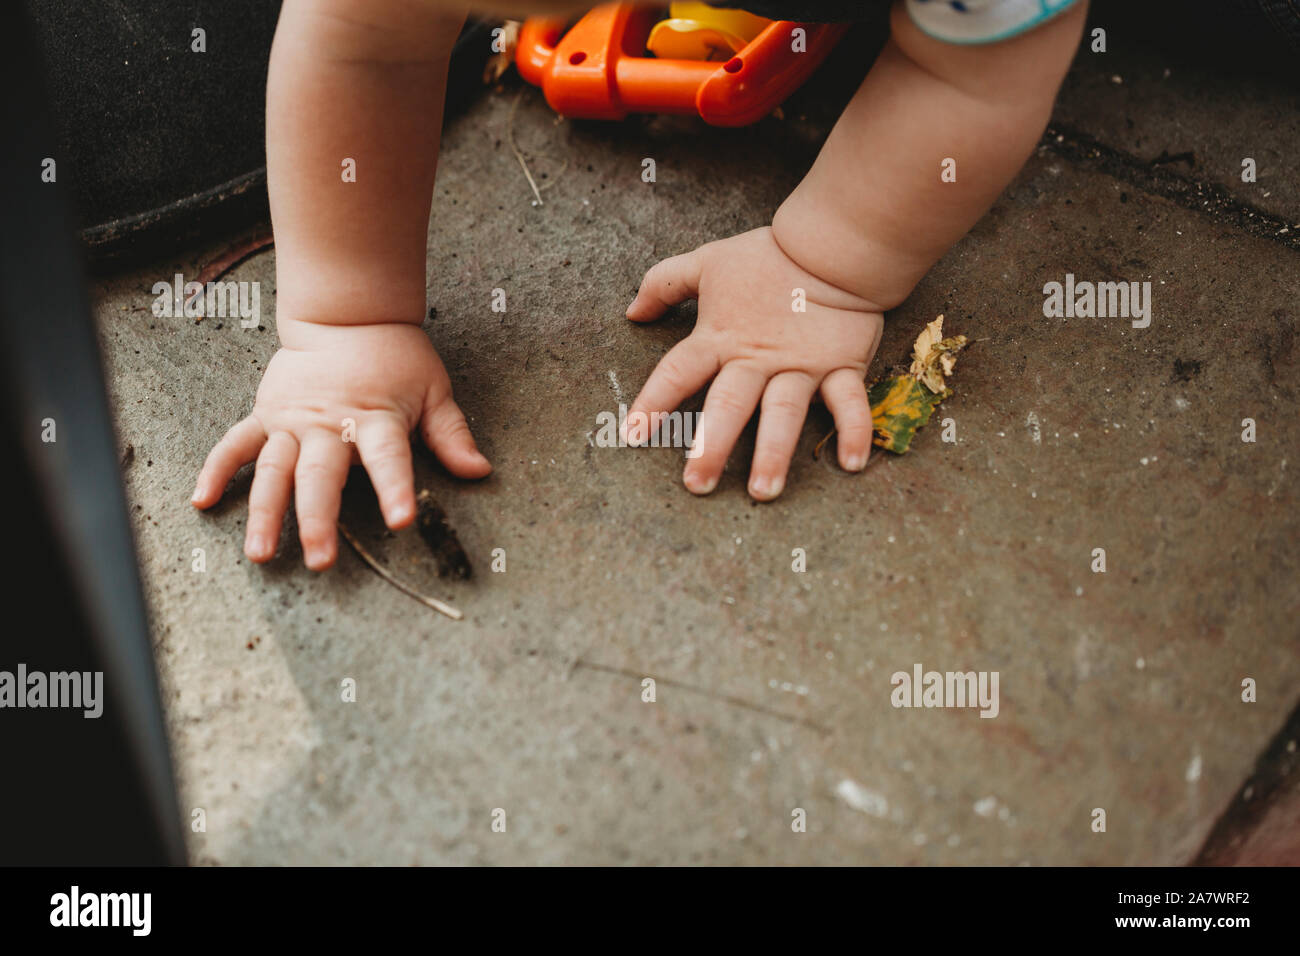 Cute baby hands exploring in the garden Stock Photo